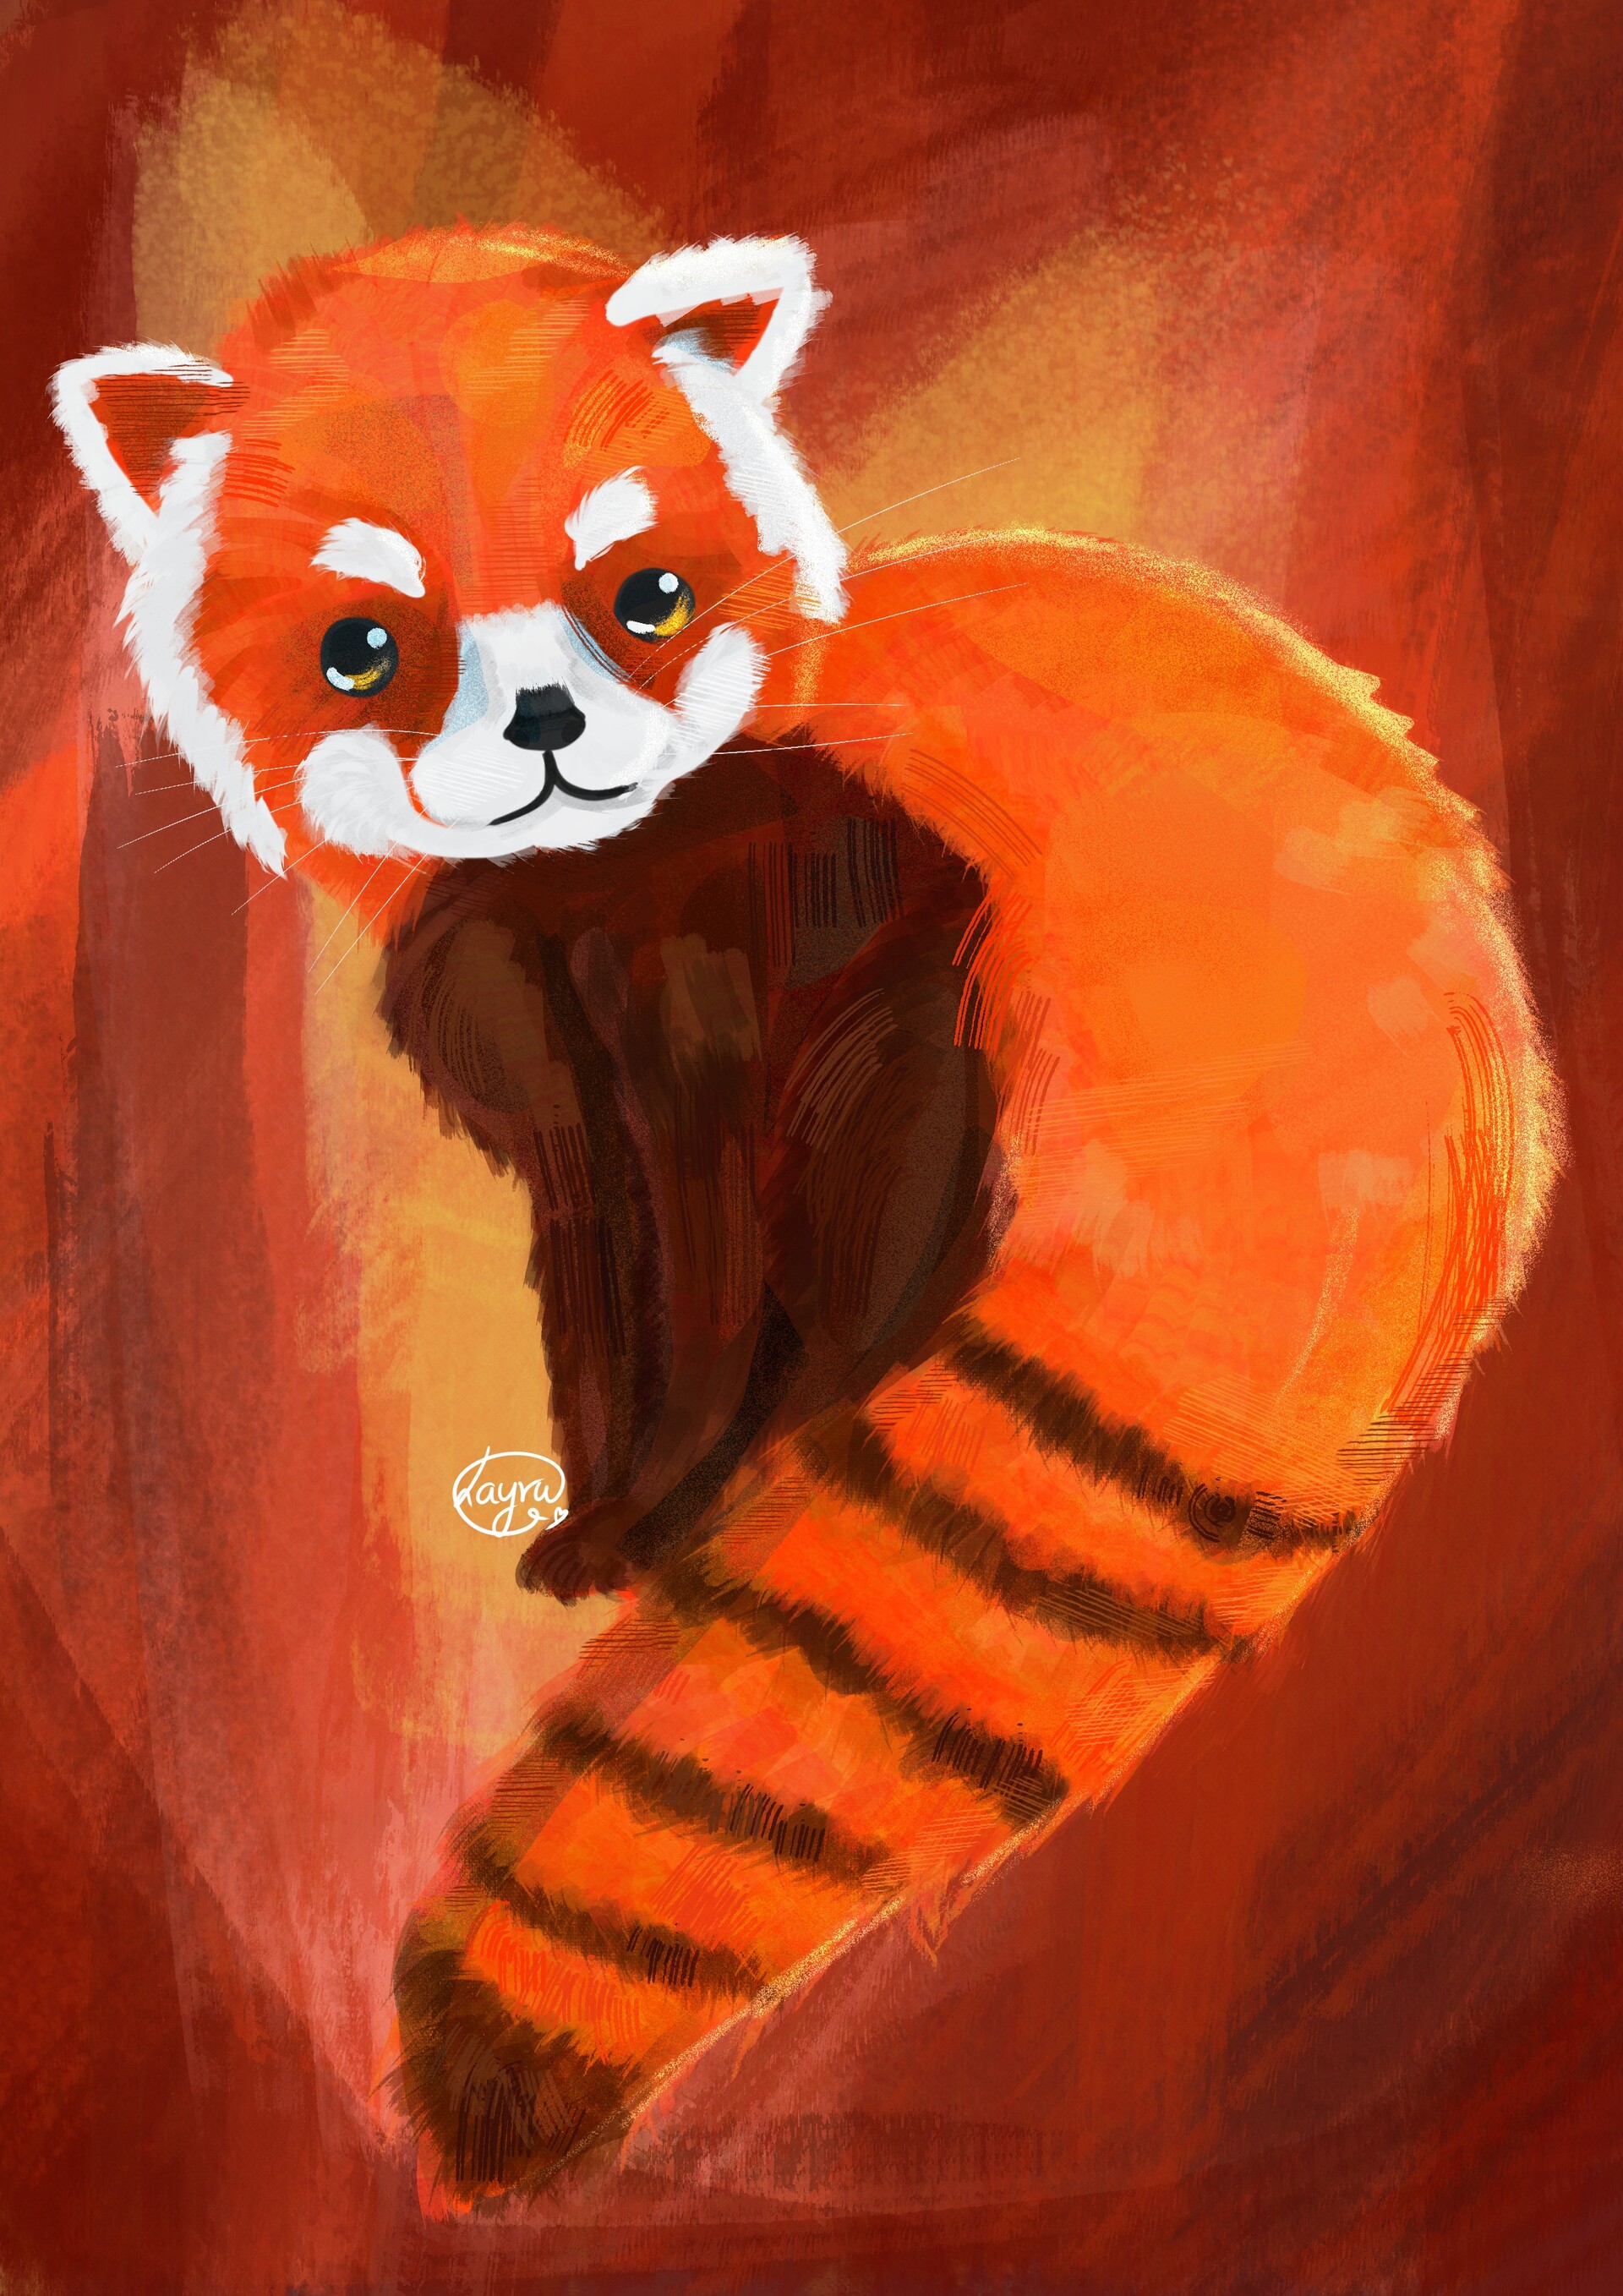 ArtStation - Red panda